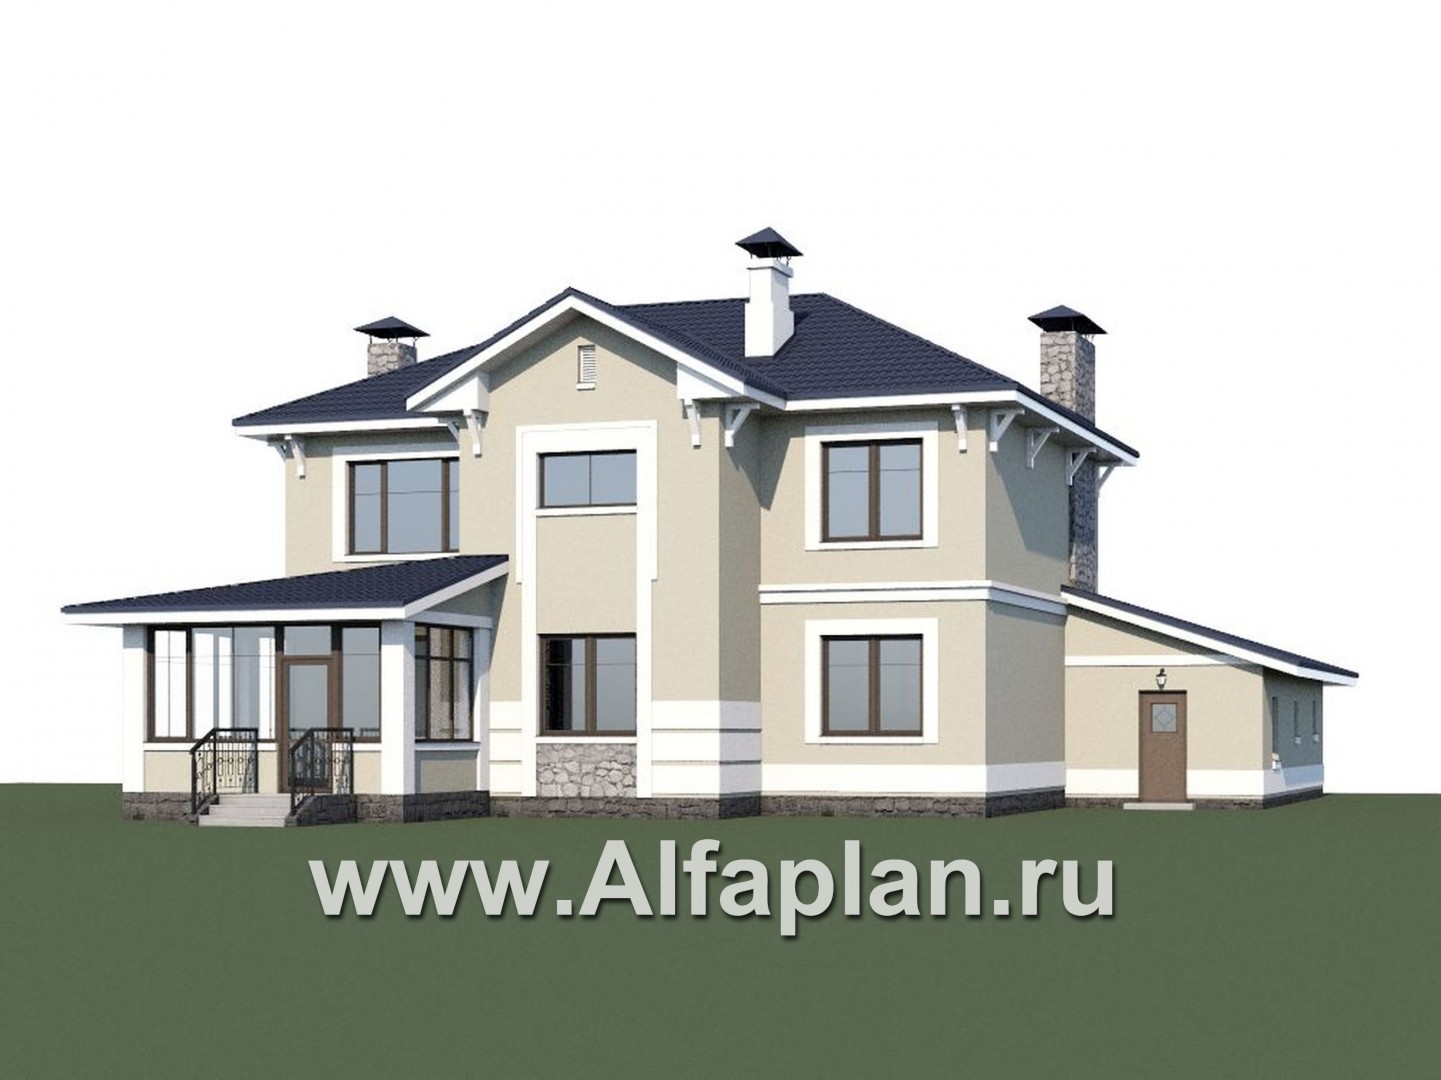 Проекты домов Альфаплан - «Семь ветров» - двухэтажный  комфортабельный коттедж с большим гаражом. - дополнительное изображение №1